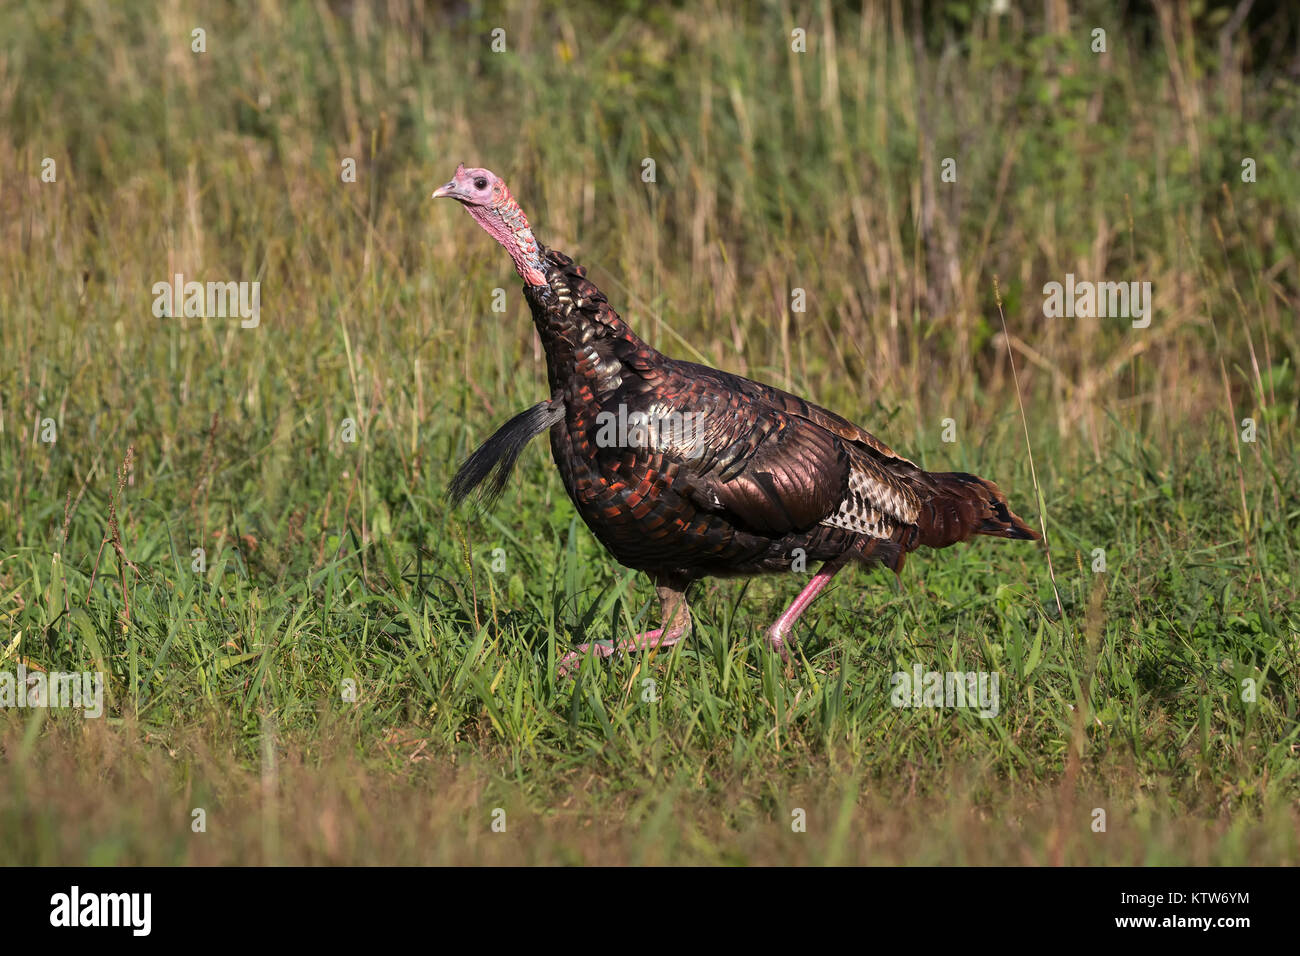 Male eastern wild turkey running in an autumn field. Stock Photo